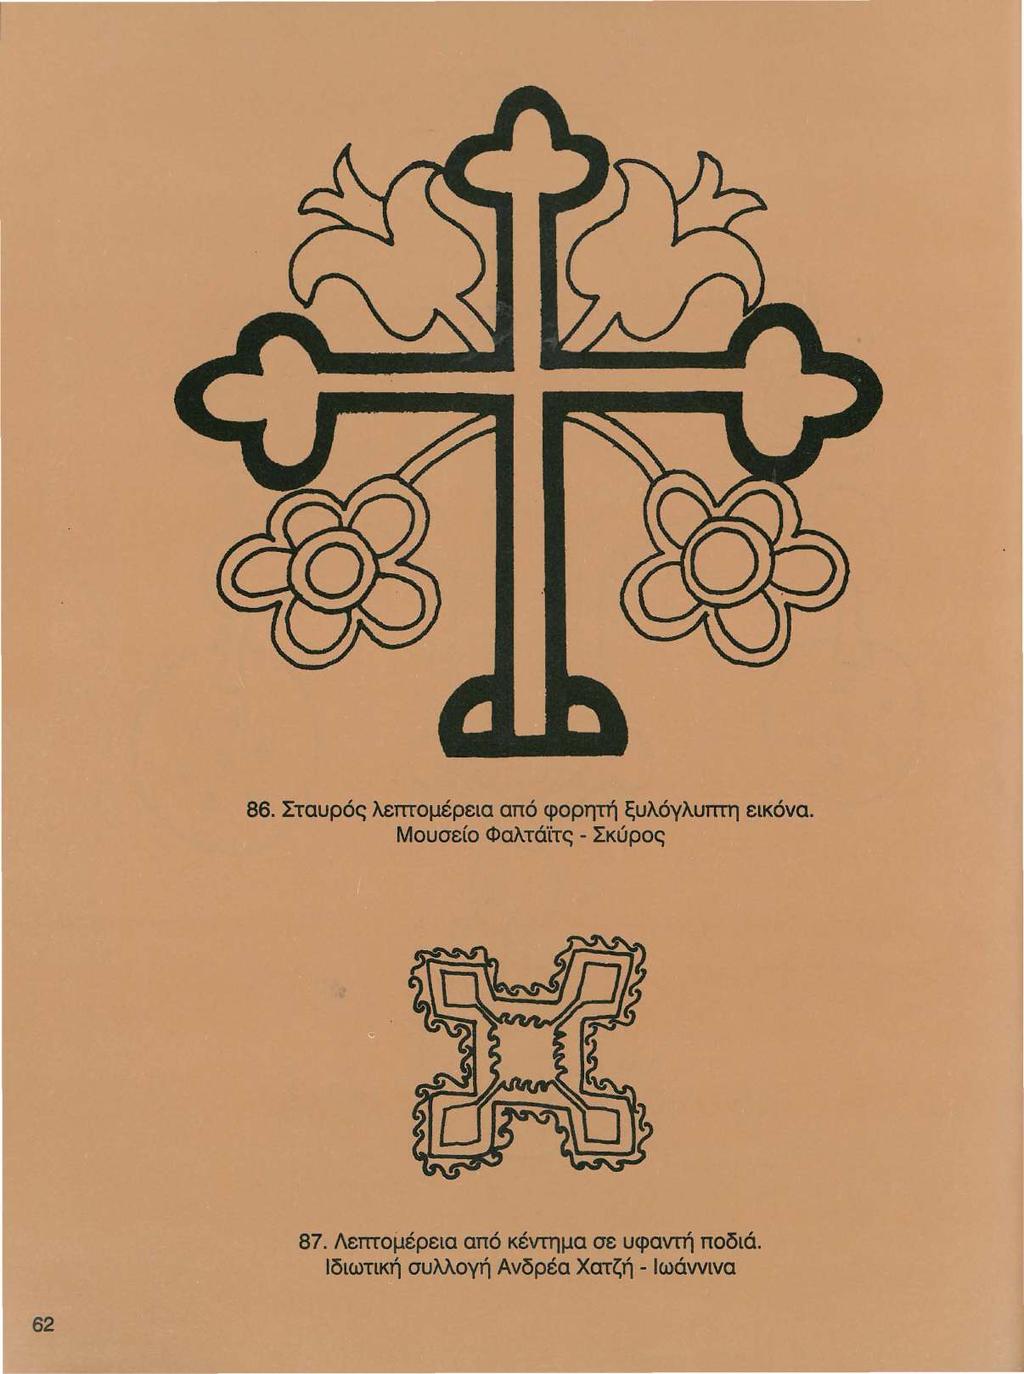 86. Σταυρός λεmομέρεια από φορητή ξυλόγλυπτη εικόνα. Μουσείο Φαλτά'ίτς - Σκύρος 87.